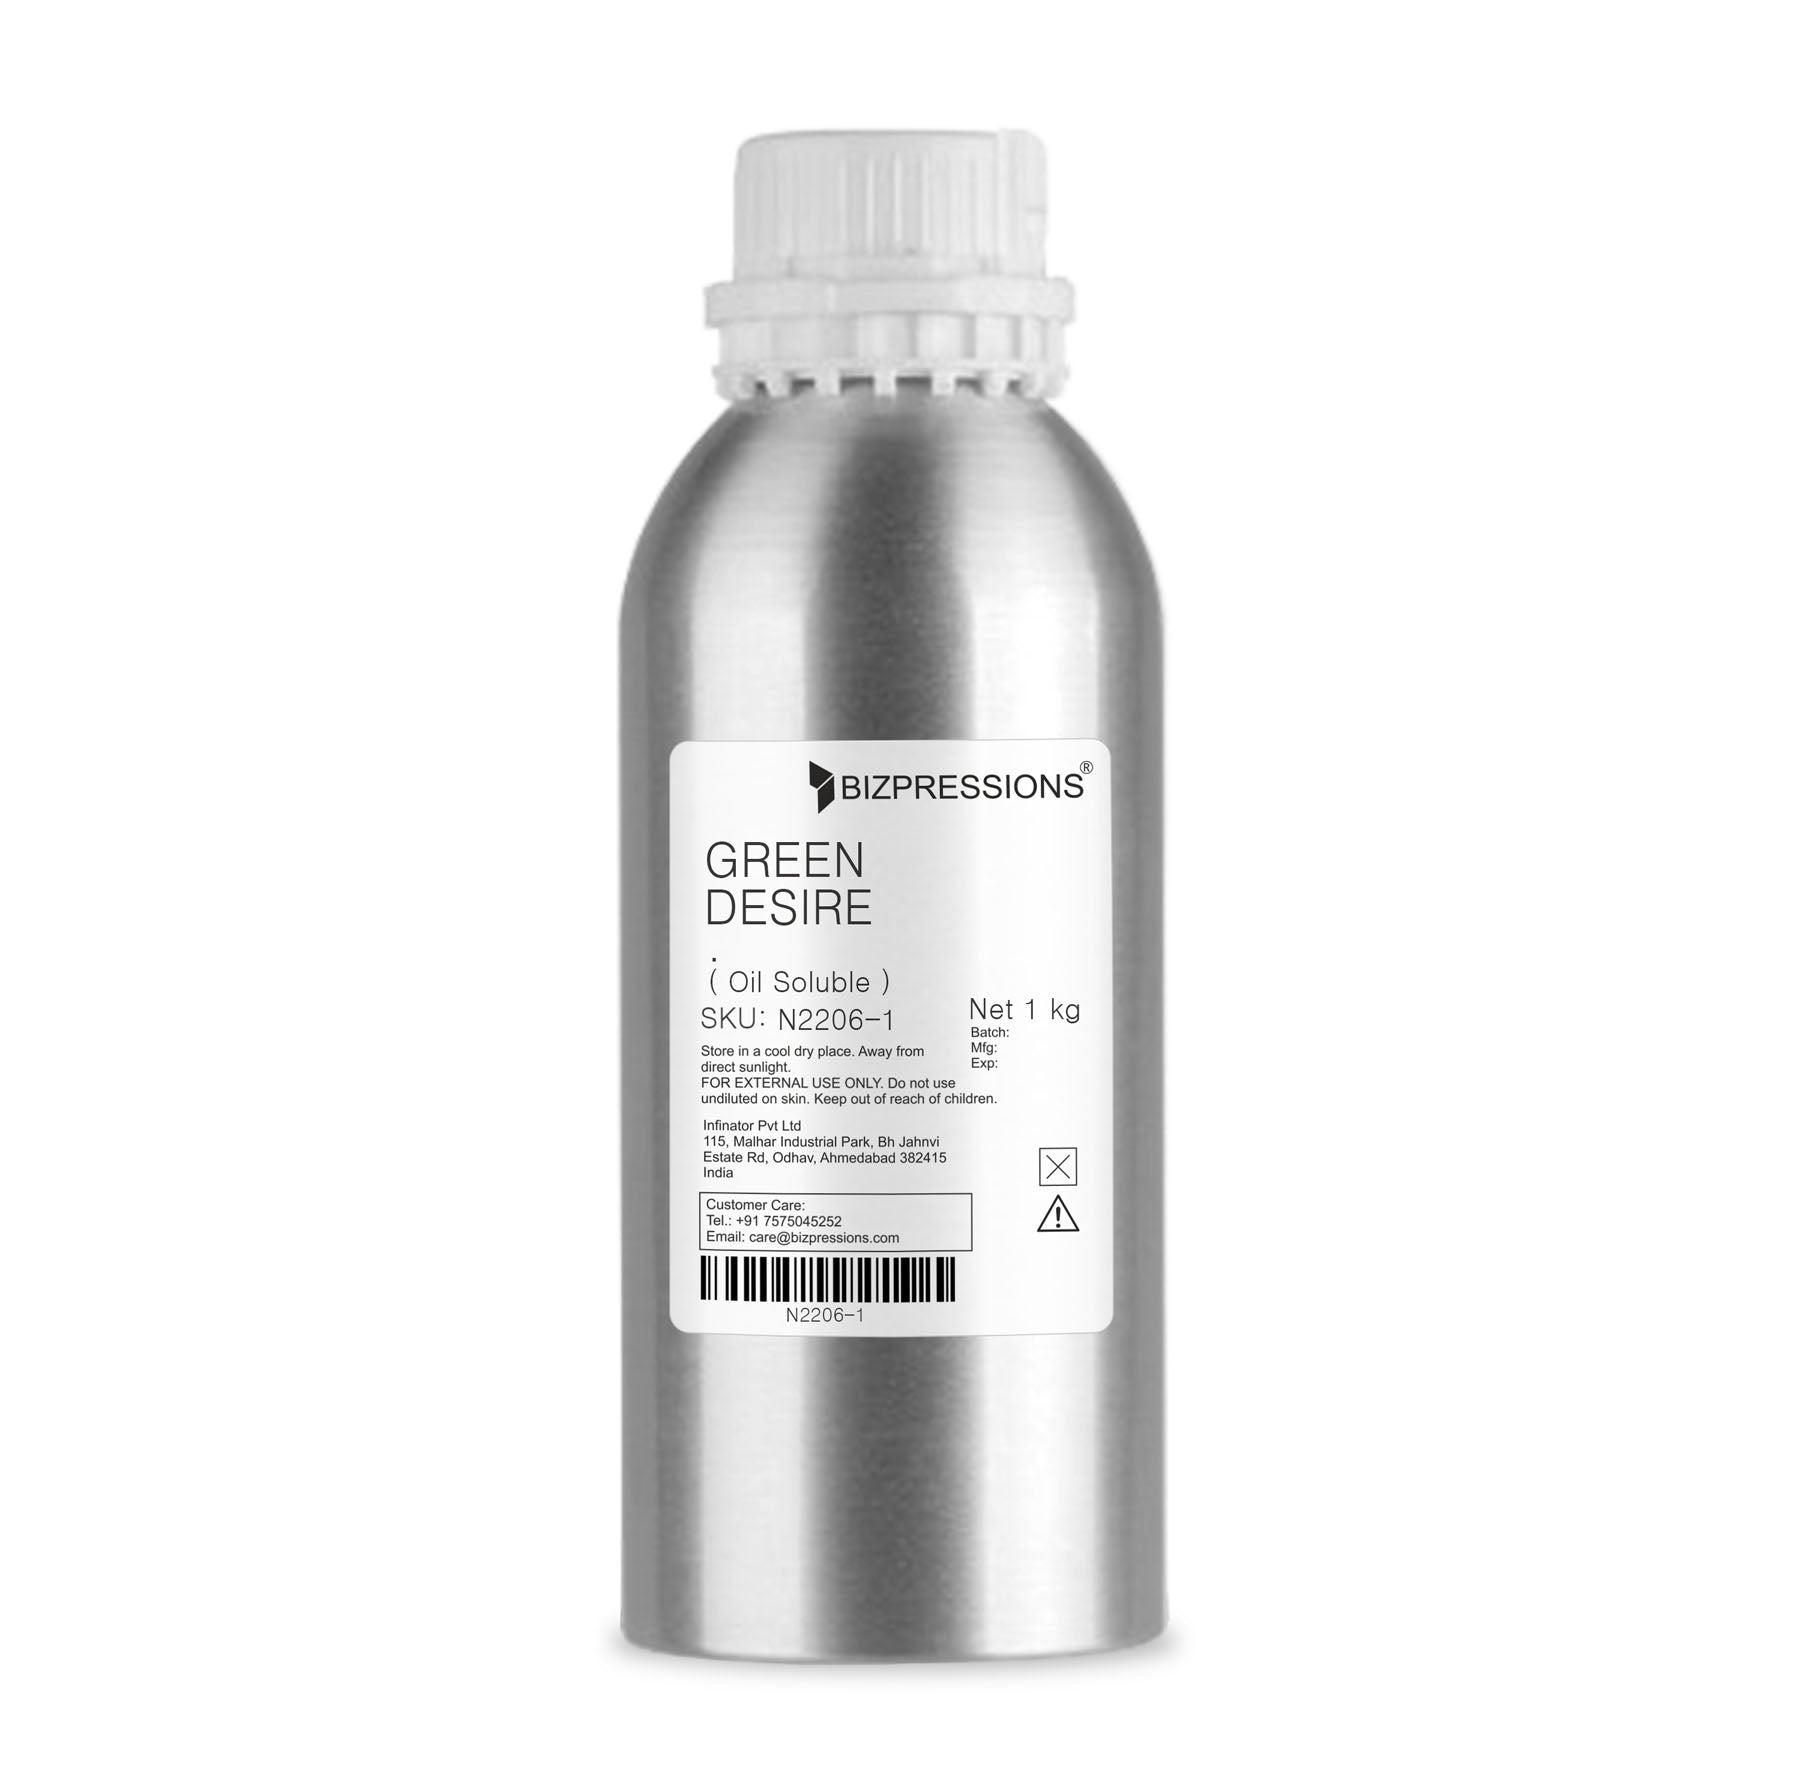 GREEN DESIRE - Fragrance ( Oil Soluble ) - 1 kg